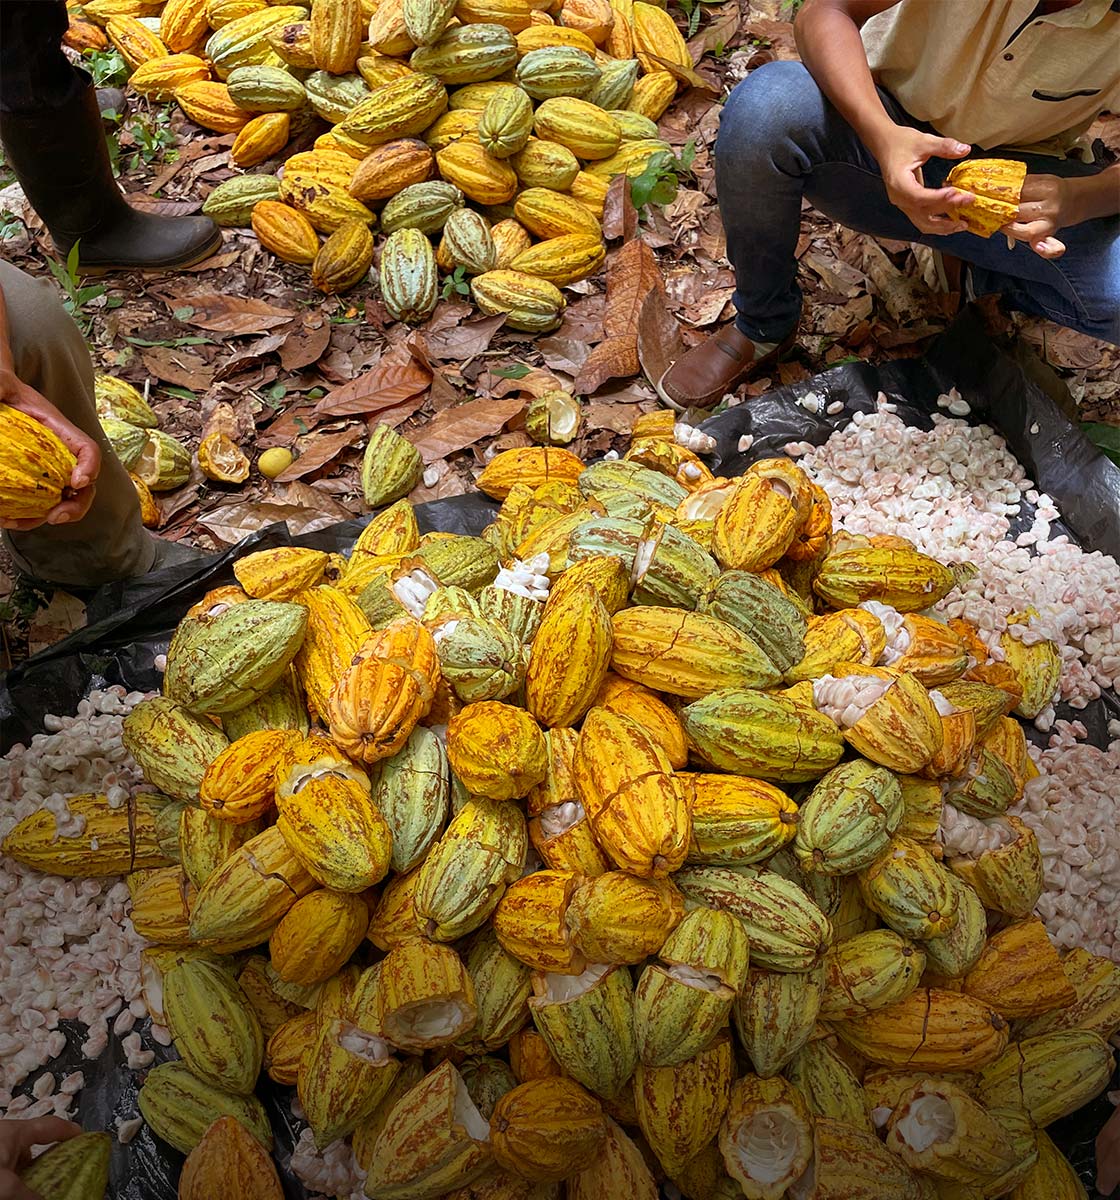 Kakaoernte in Handarbeit - frische Kakaobohnen werden aus der Frucht geschält